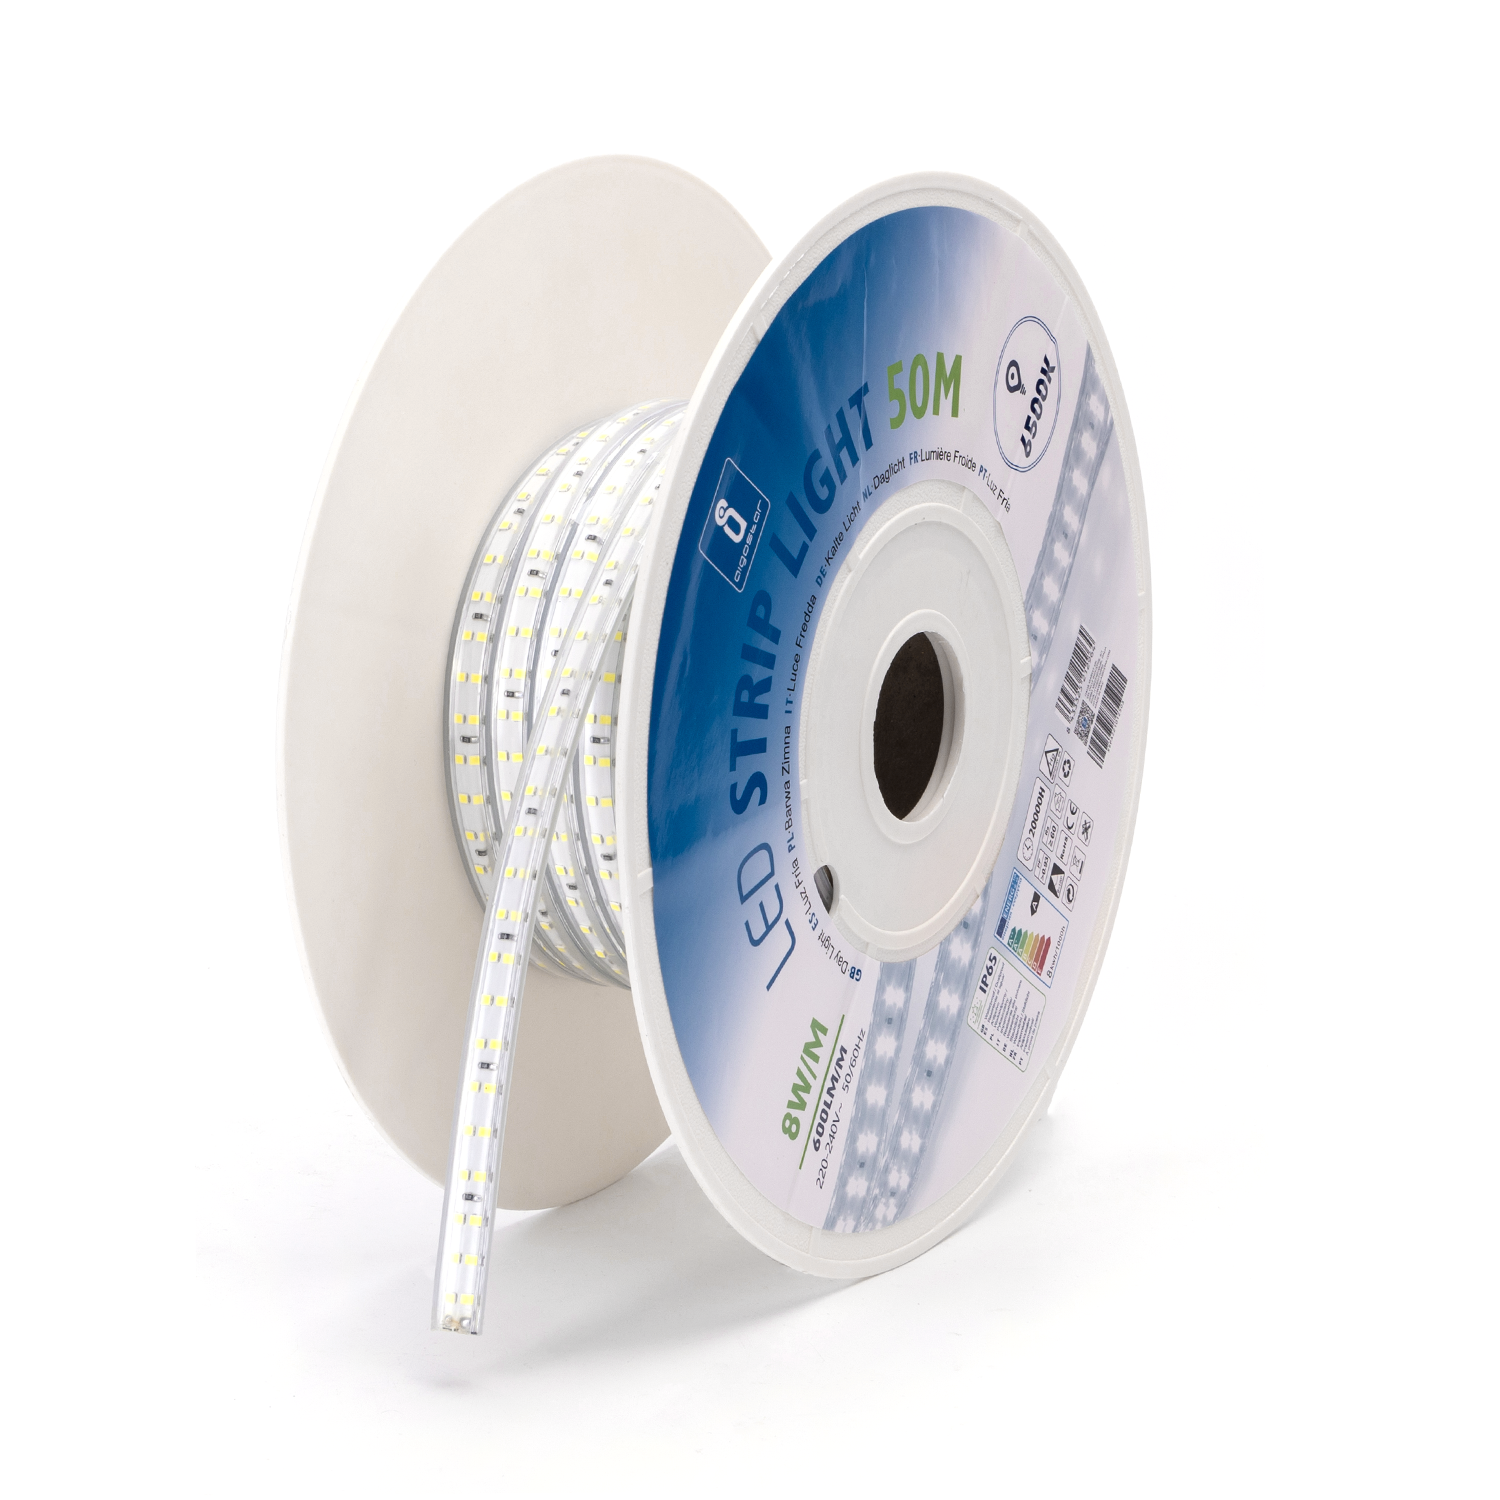 Ruban LED 12V Blanc Froid 60 LEDS 5050 900 lumens par metre Rouleau de 5m  non waterproof